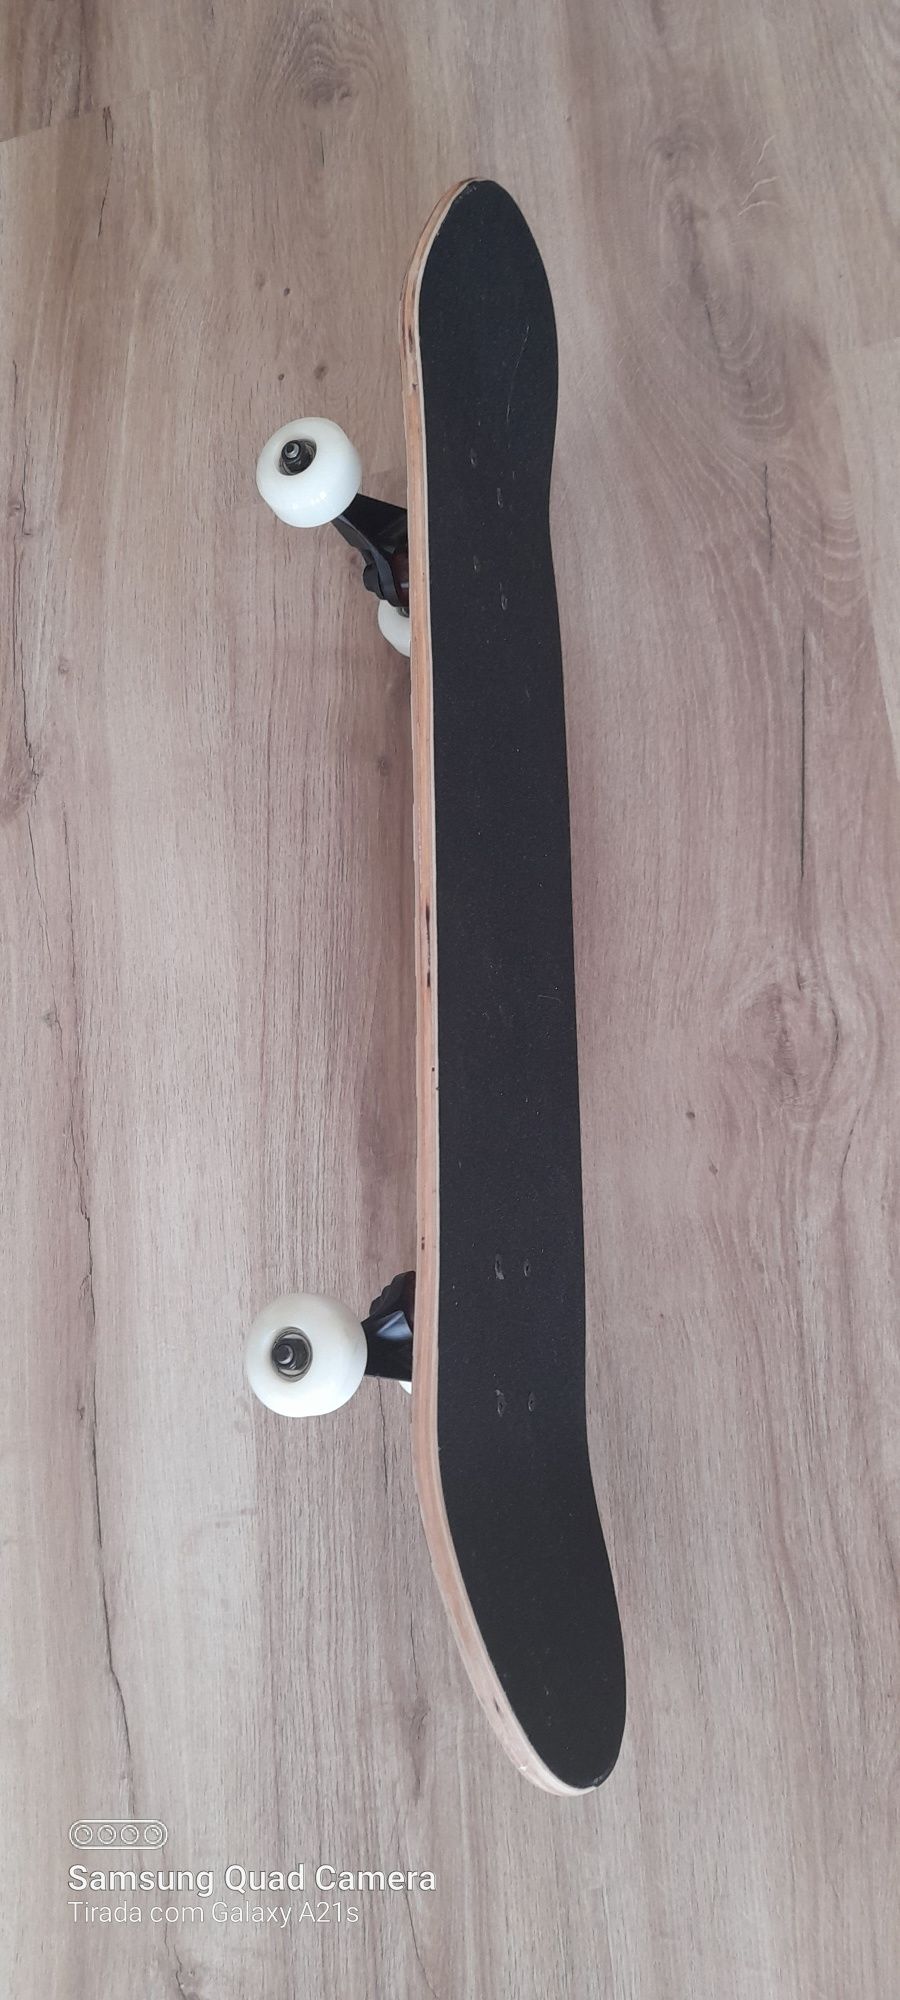 Vendo Skateboard novo